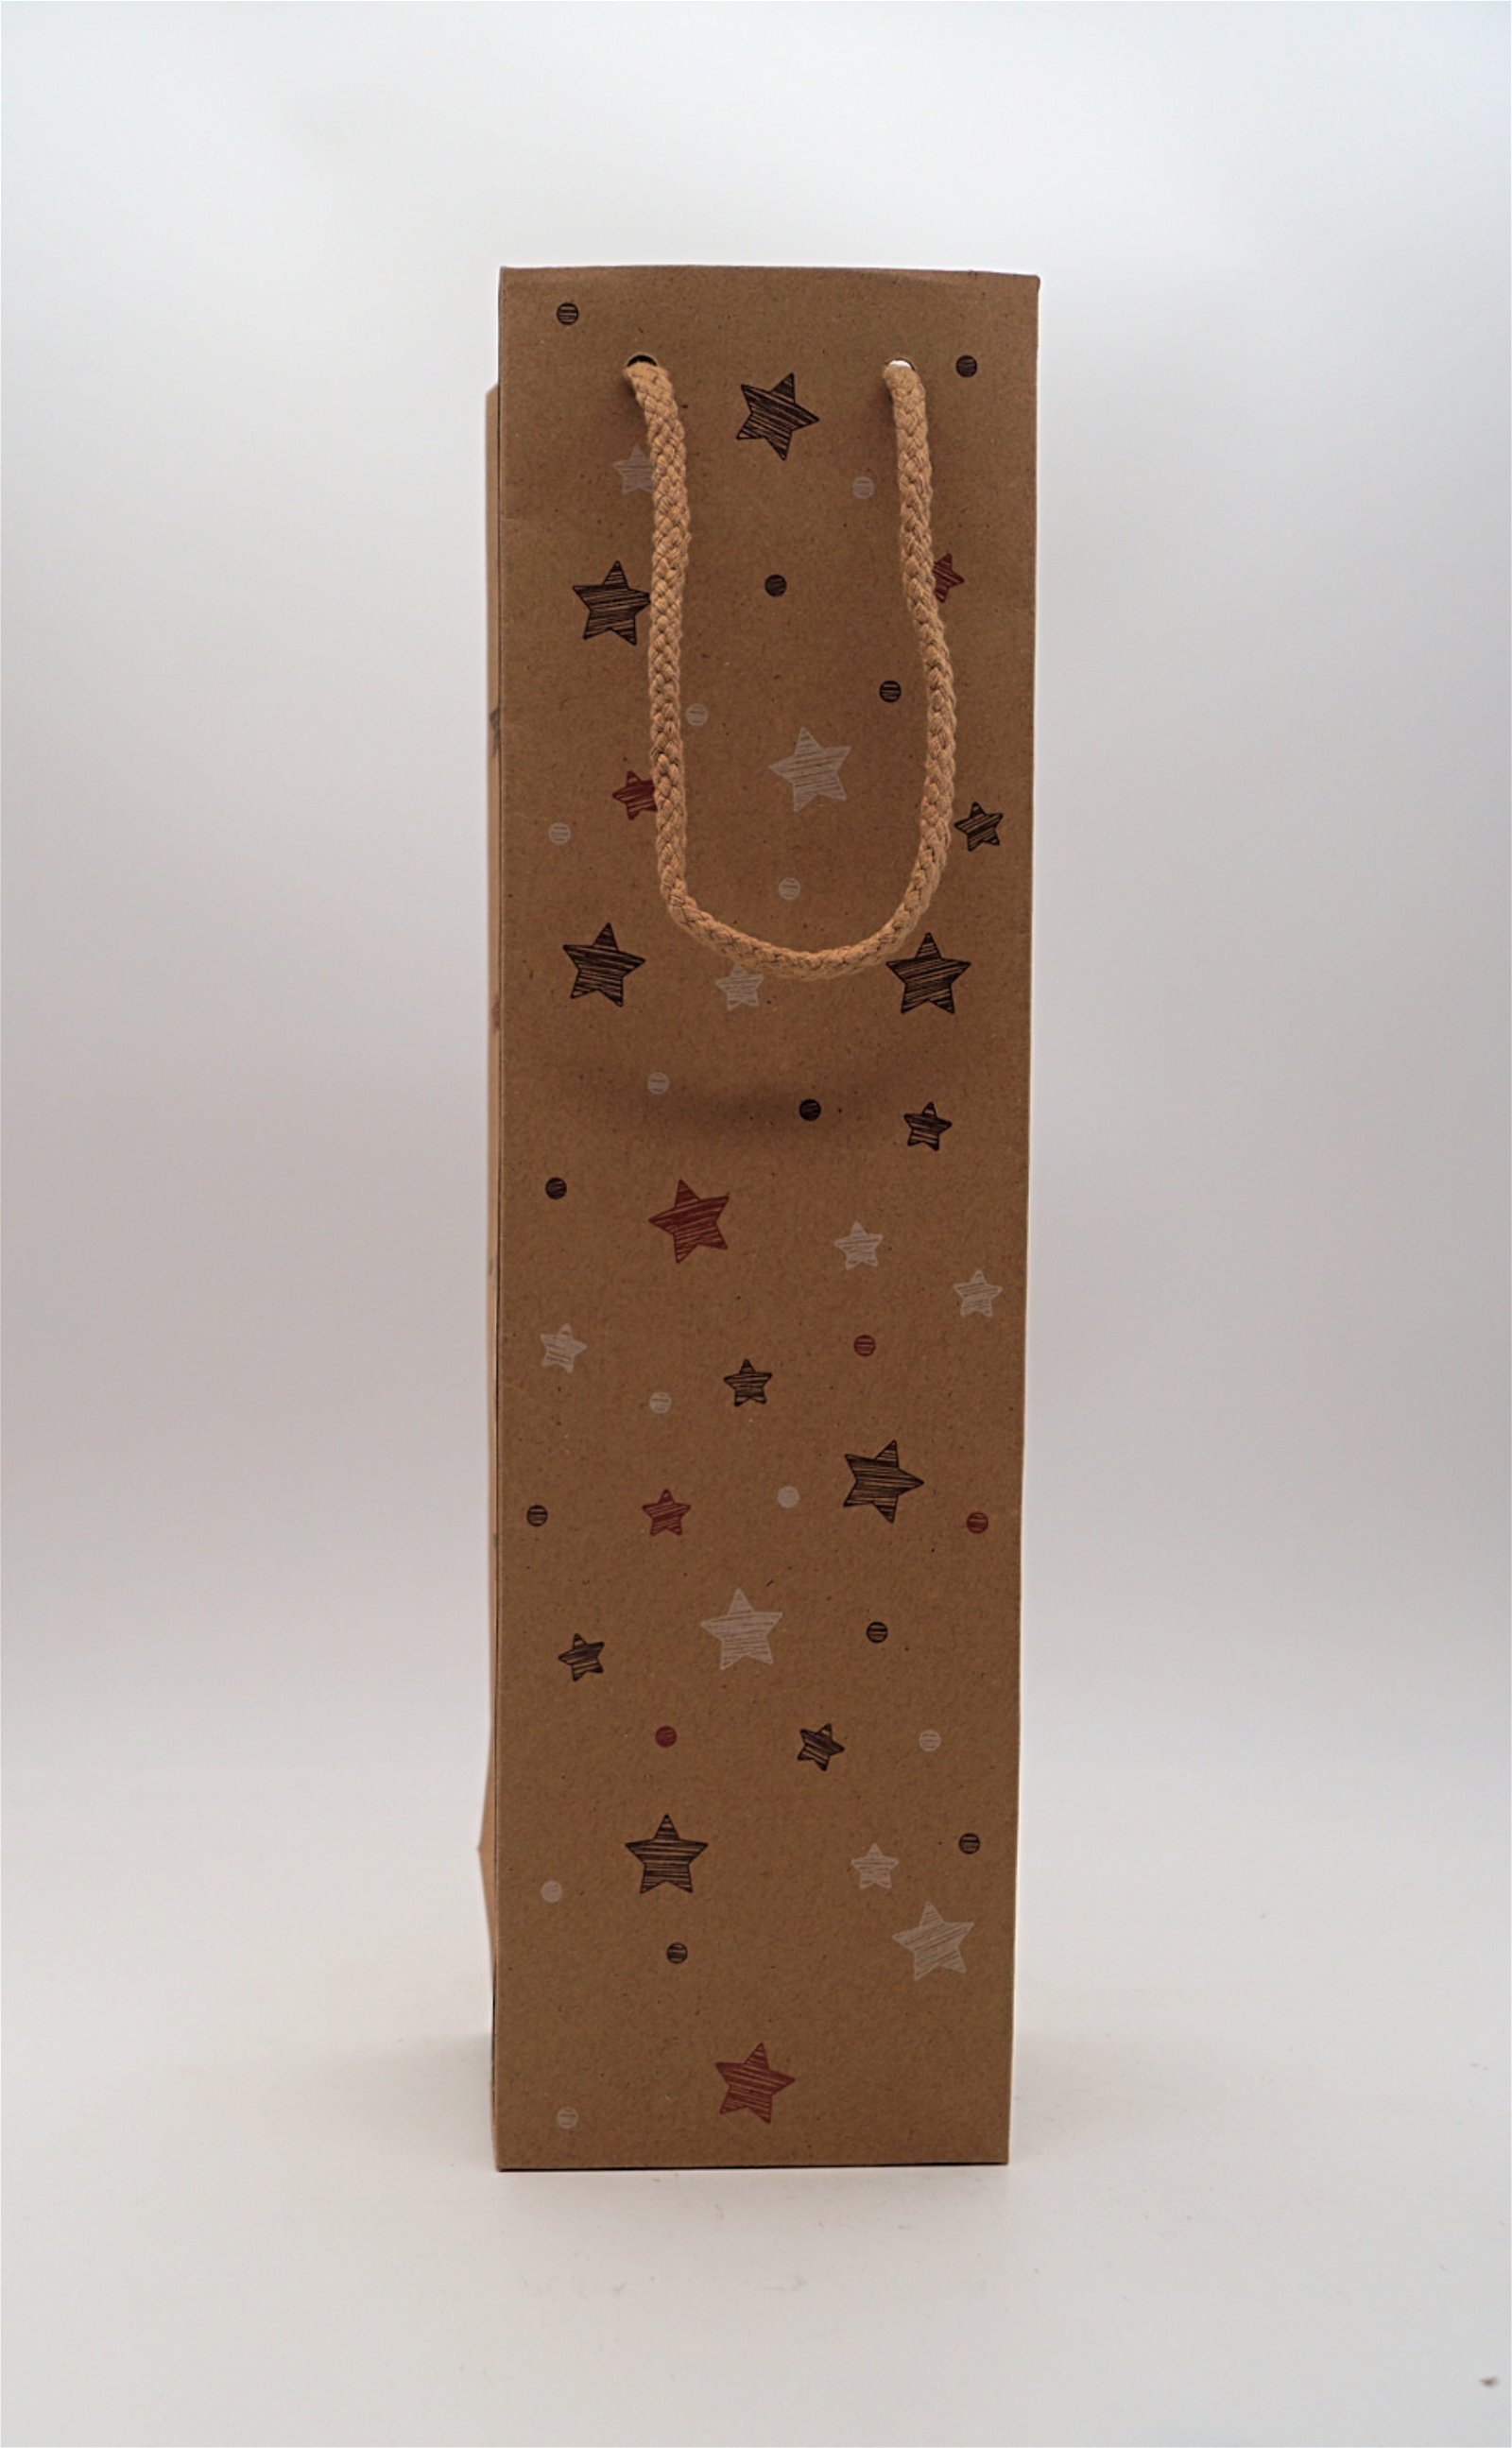 Der Schnapsstodl Weihnachtsgeschenktüte Braun bedruckt mit Sternen